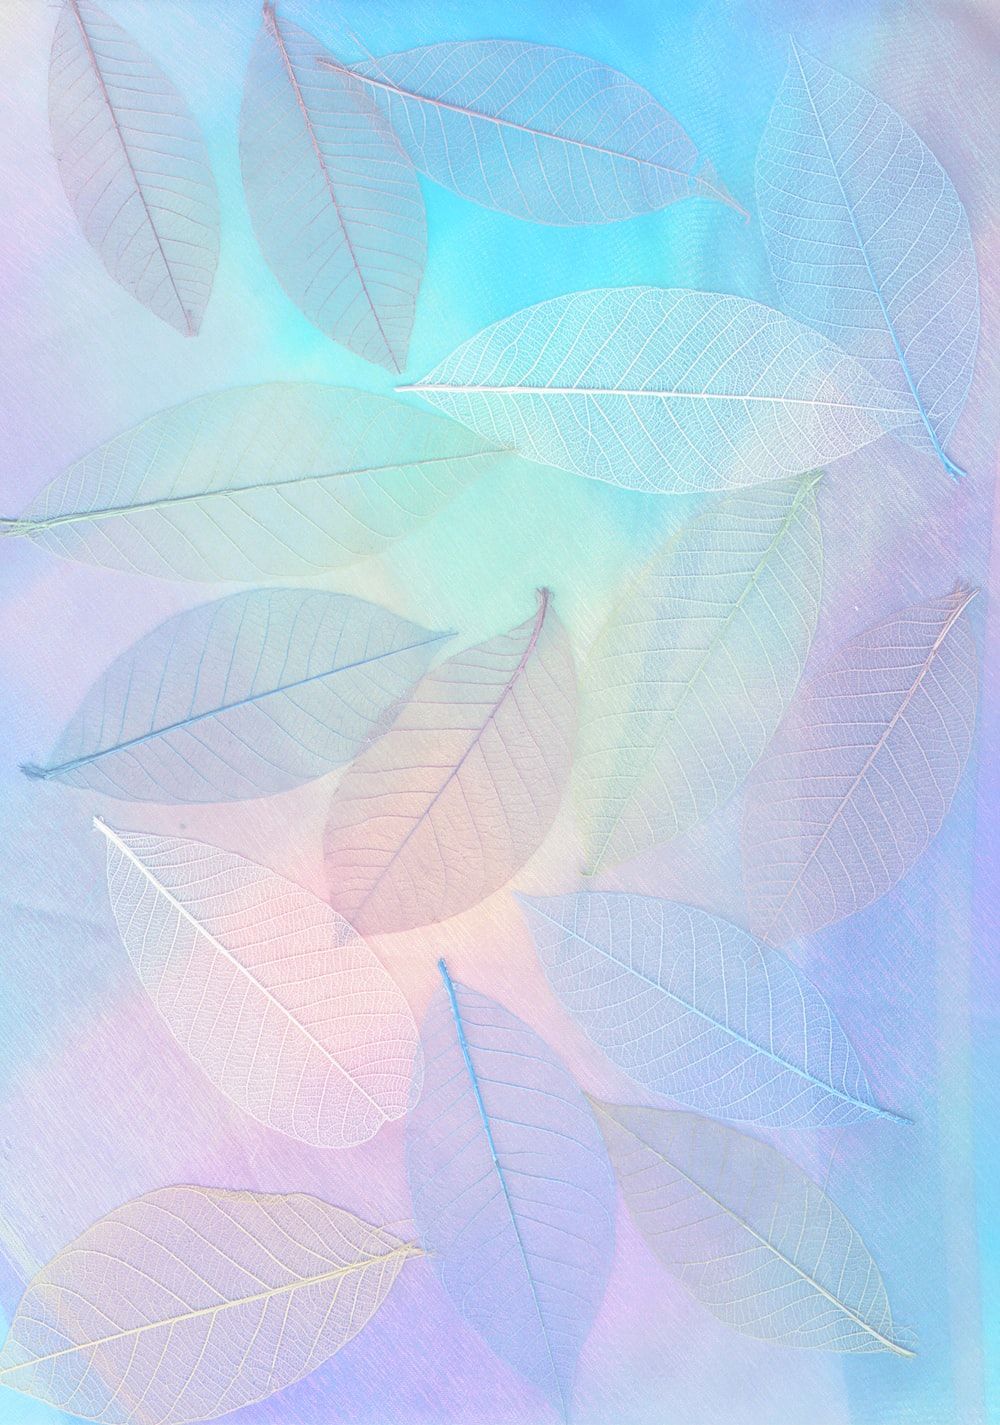  Pastell Hintergrundbild 1000x1425. Pastel Wallpaper: Free HD Download [HQ]